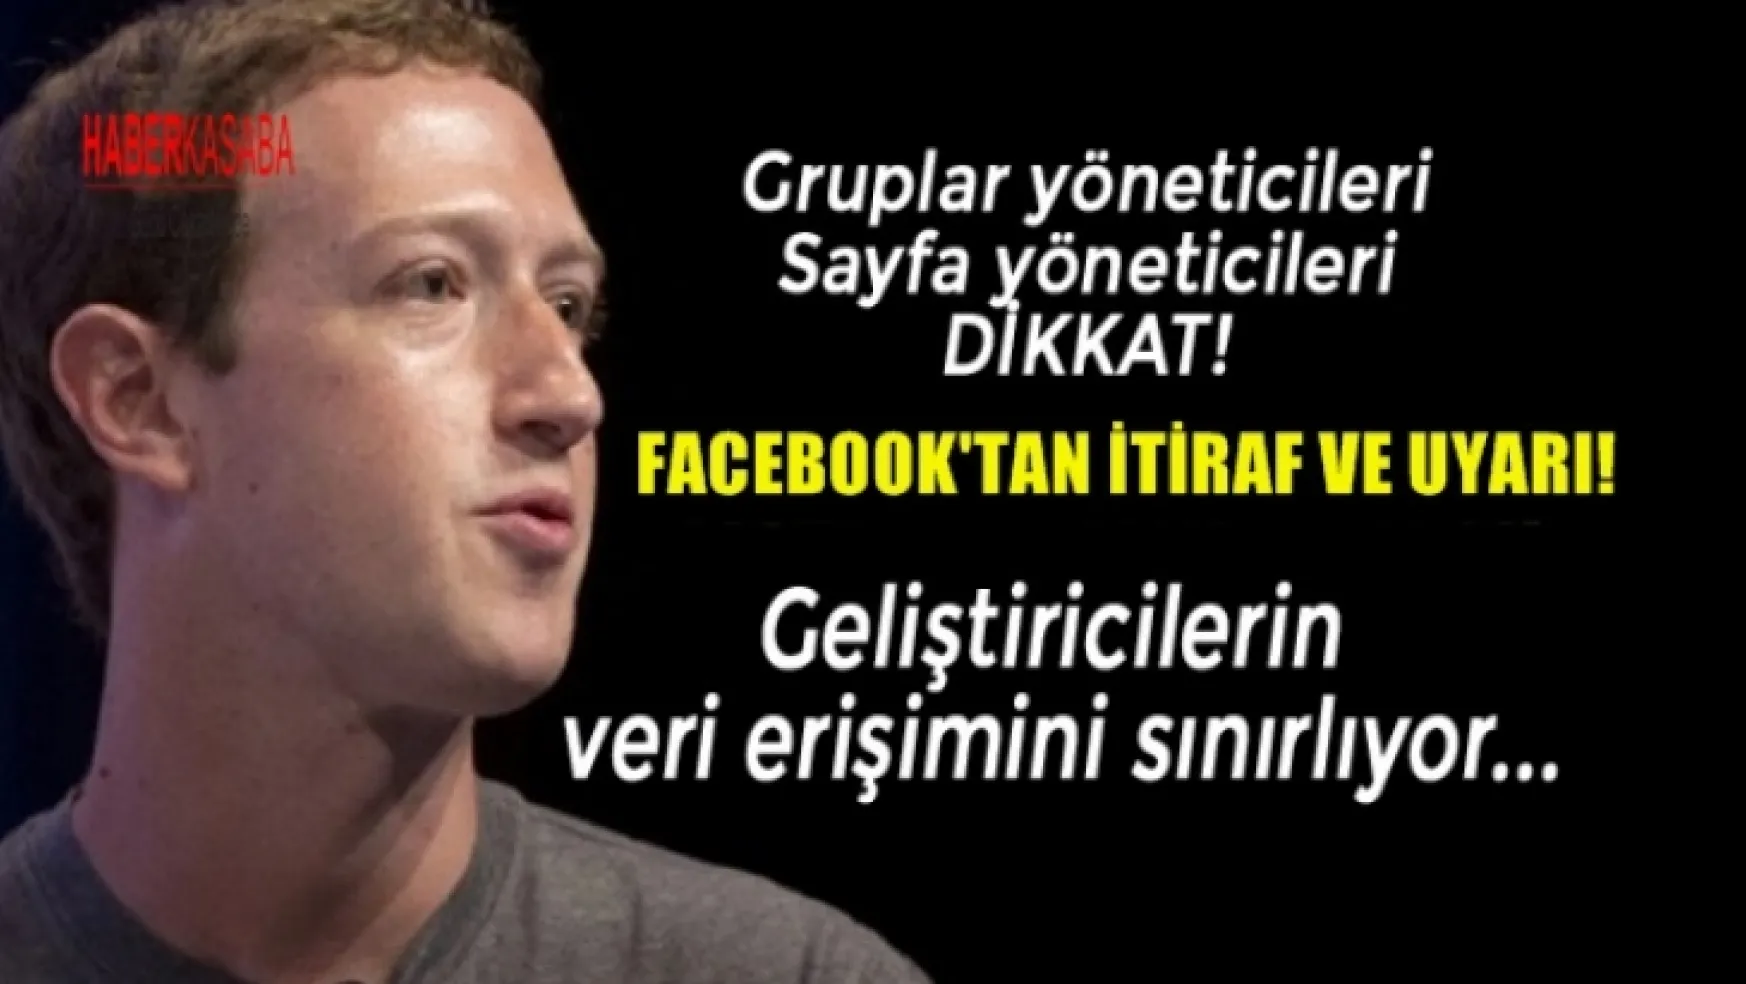 Facebook Gruplar yöneticileri, Sayfa yöneticileri DİKKAT!